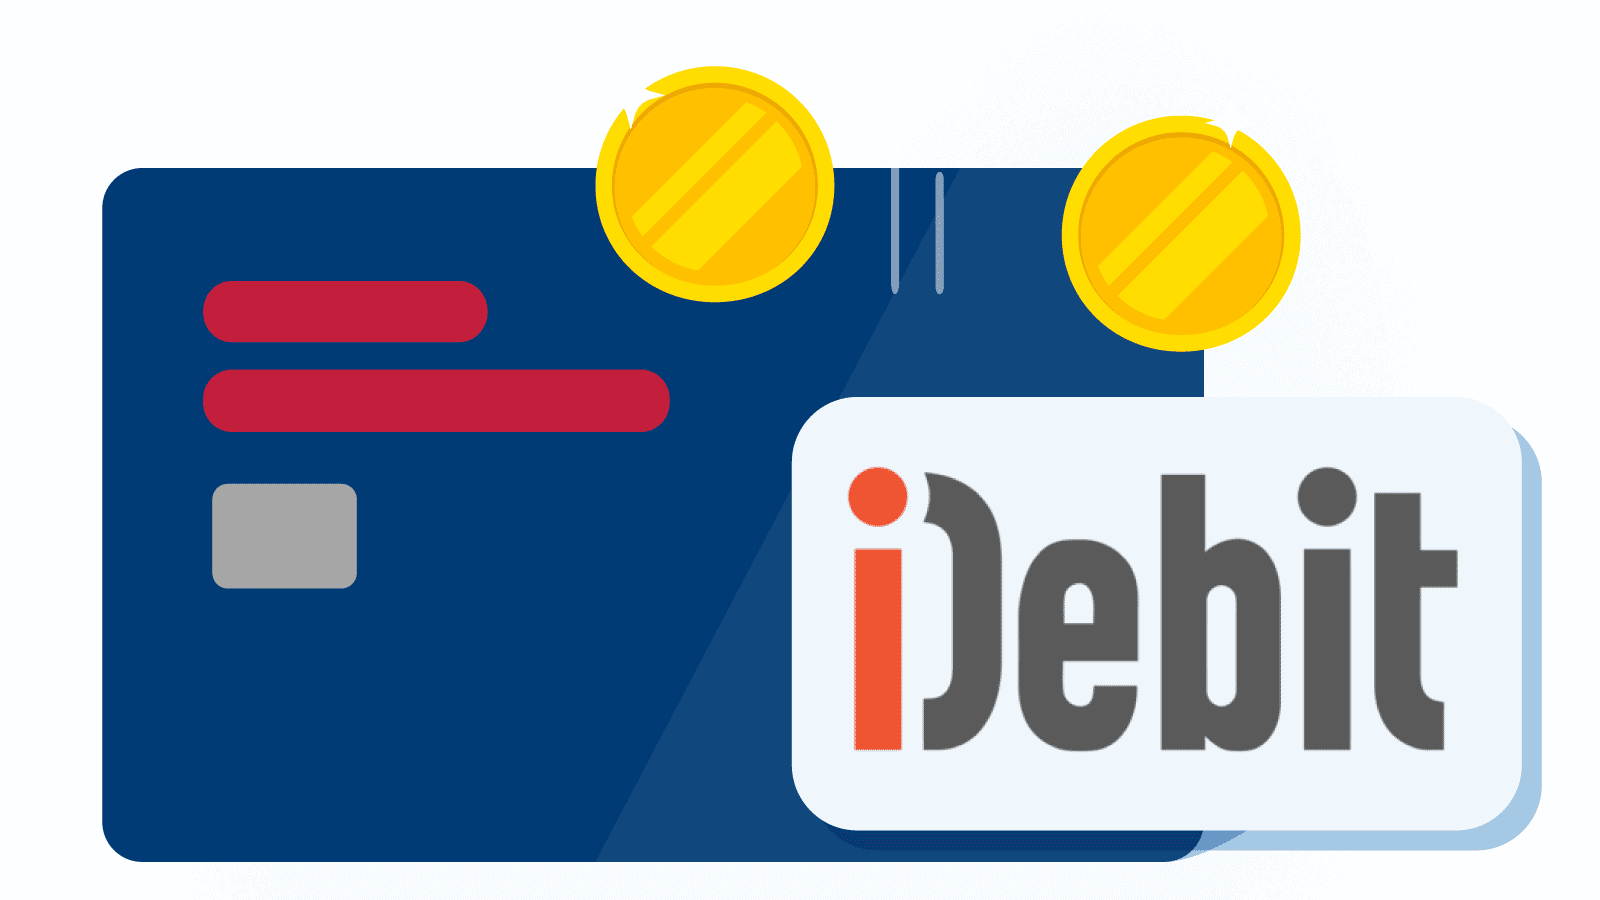 Idebit payment method for online casinos